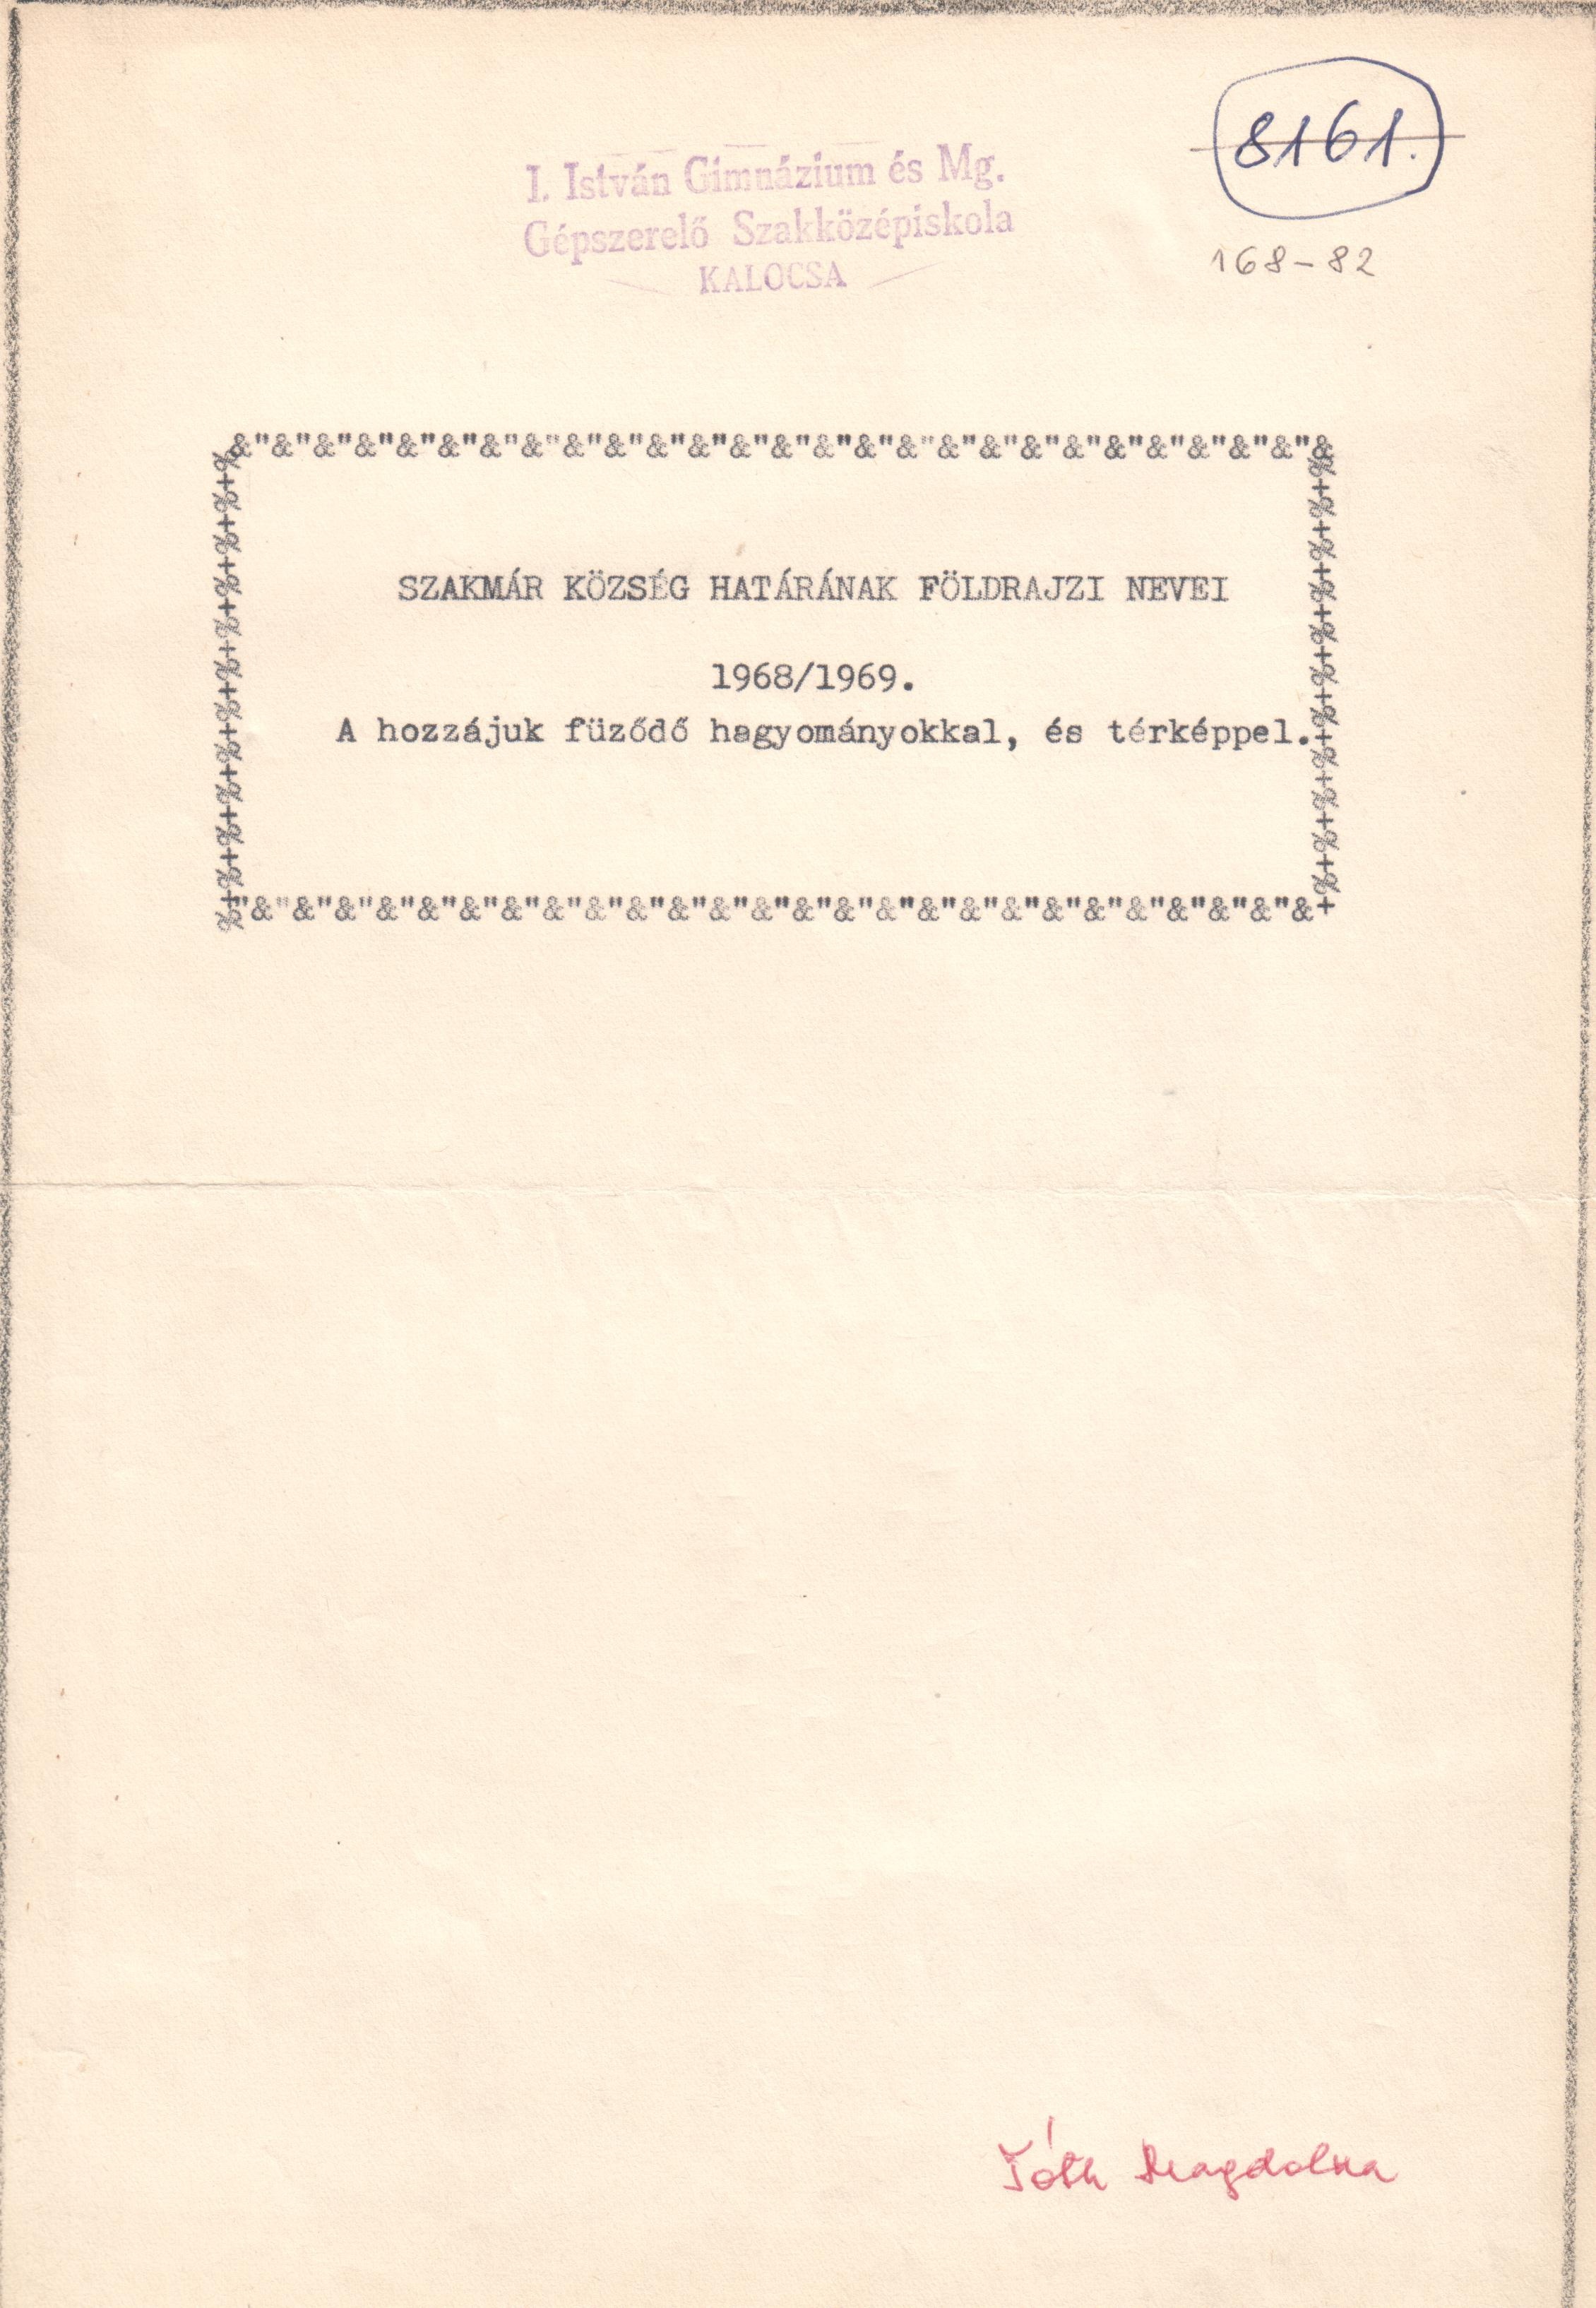 Szakmár község határának földrajzi nevei c. pályázat gépirata. (Viski Károly Múzeum Kalocsa RR-F)